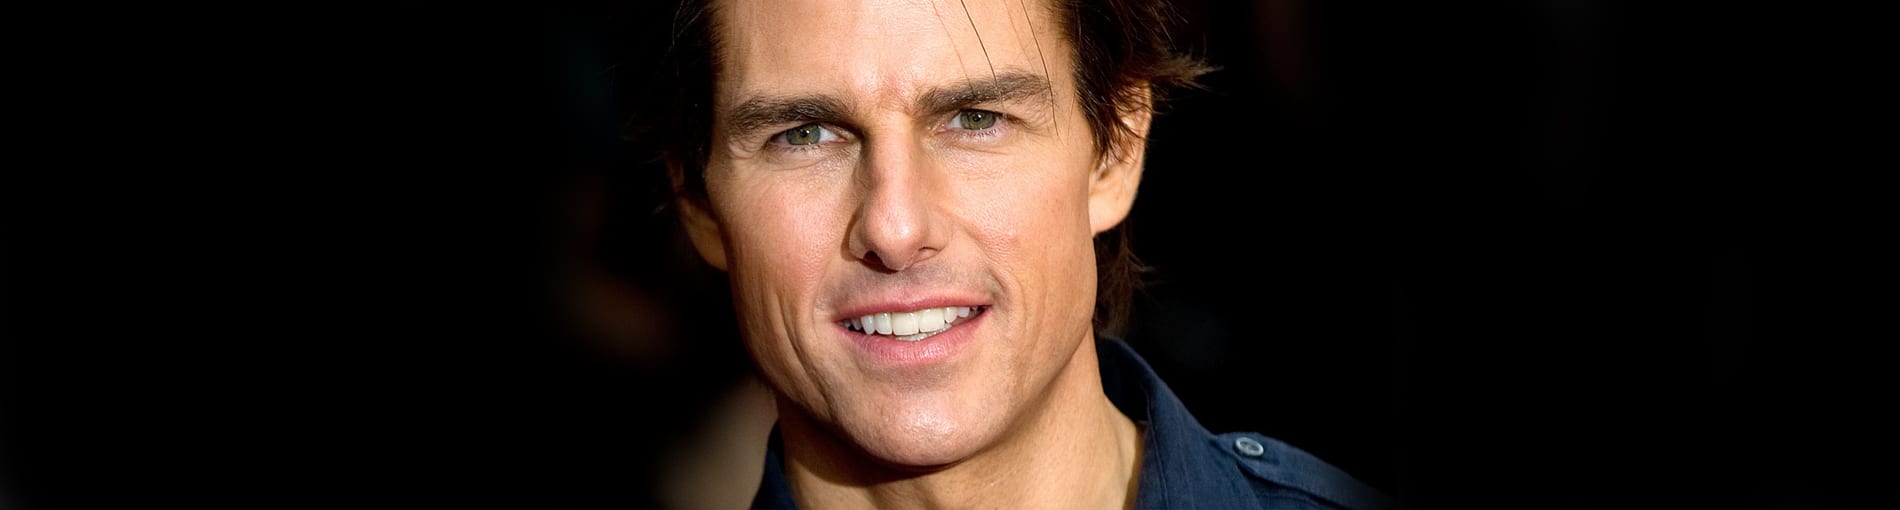 ¿Quién es Tom Cruise? Te contamos 7 curiosidades que no sabes sobre él.